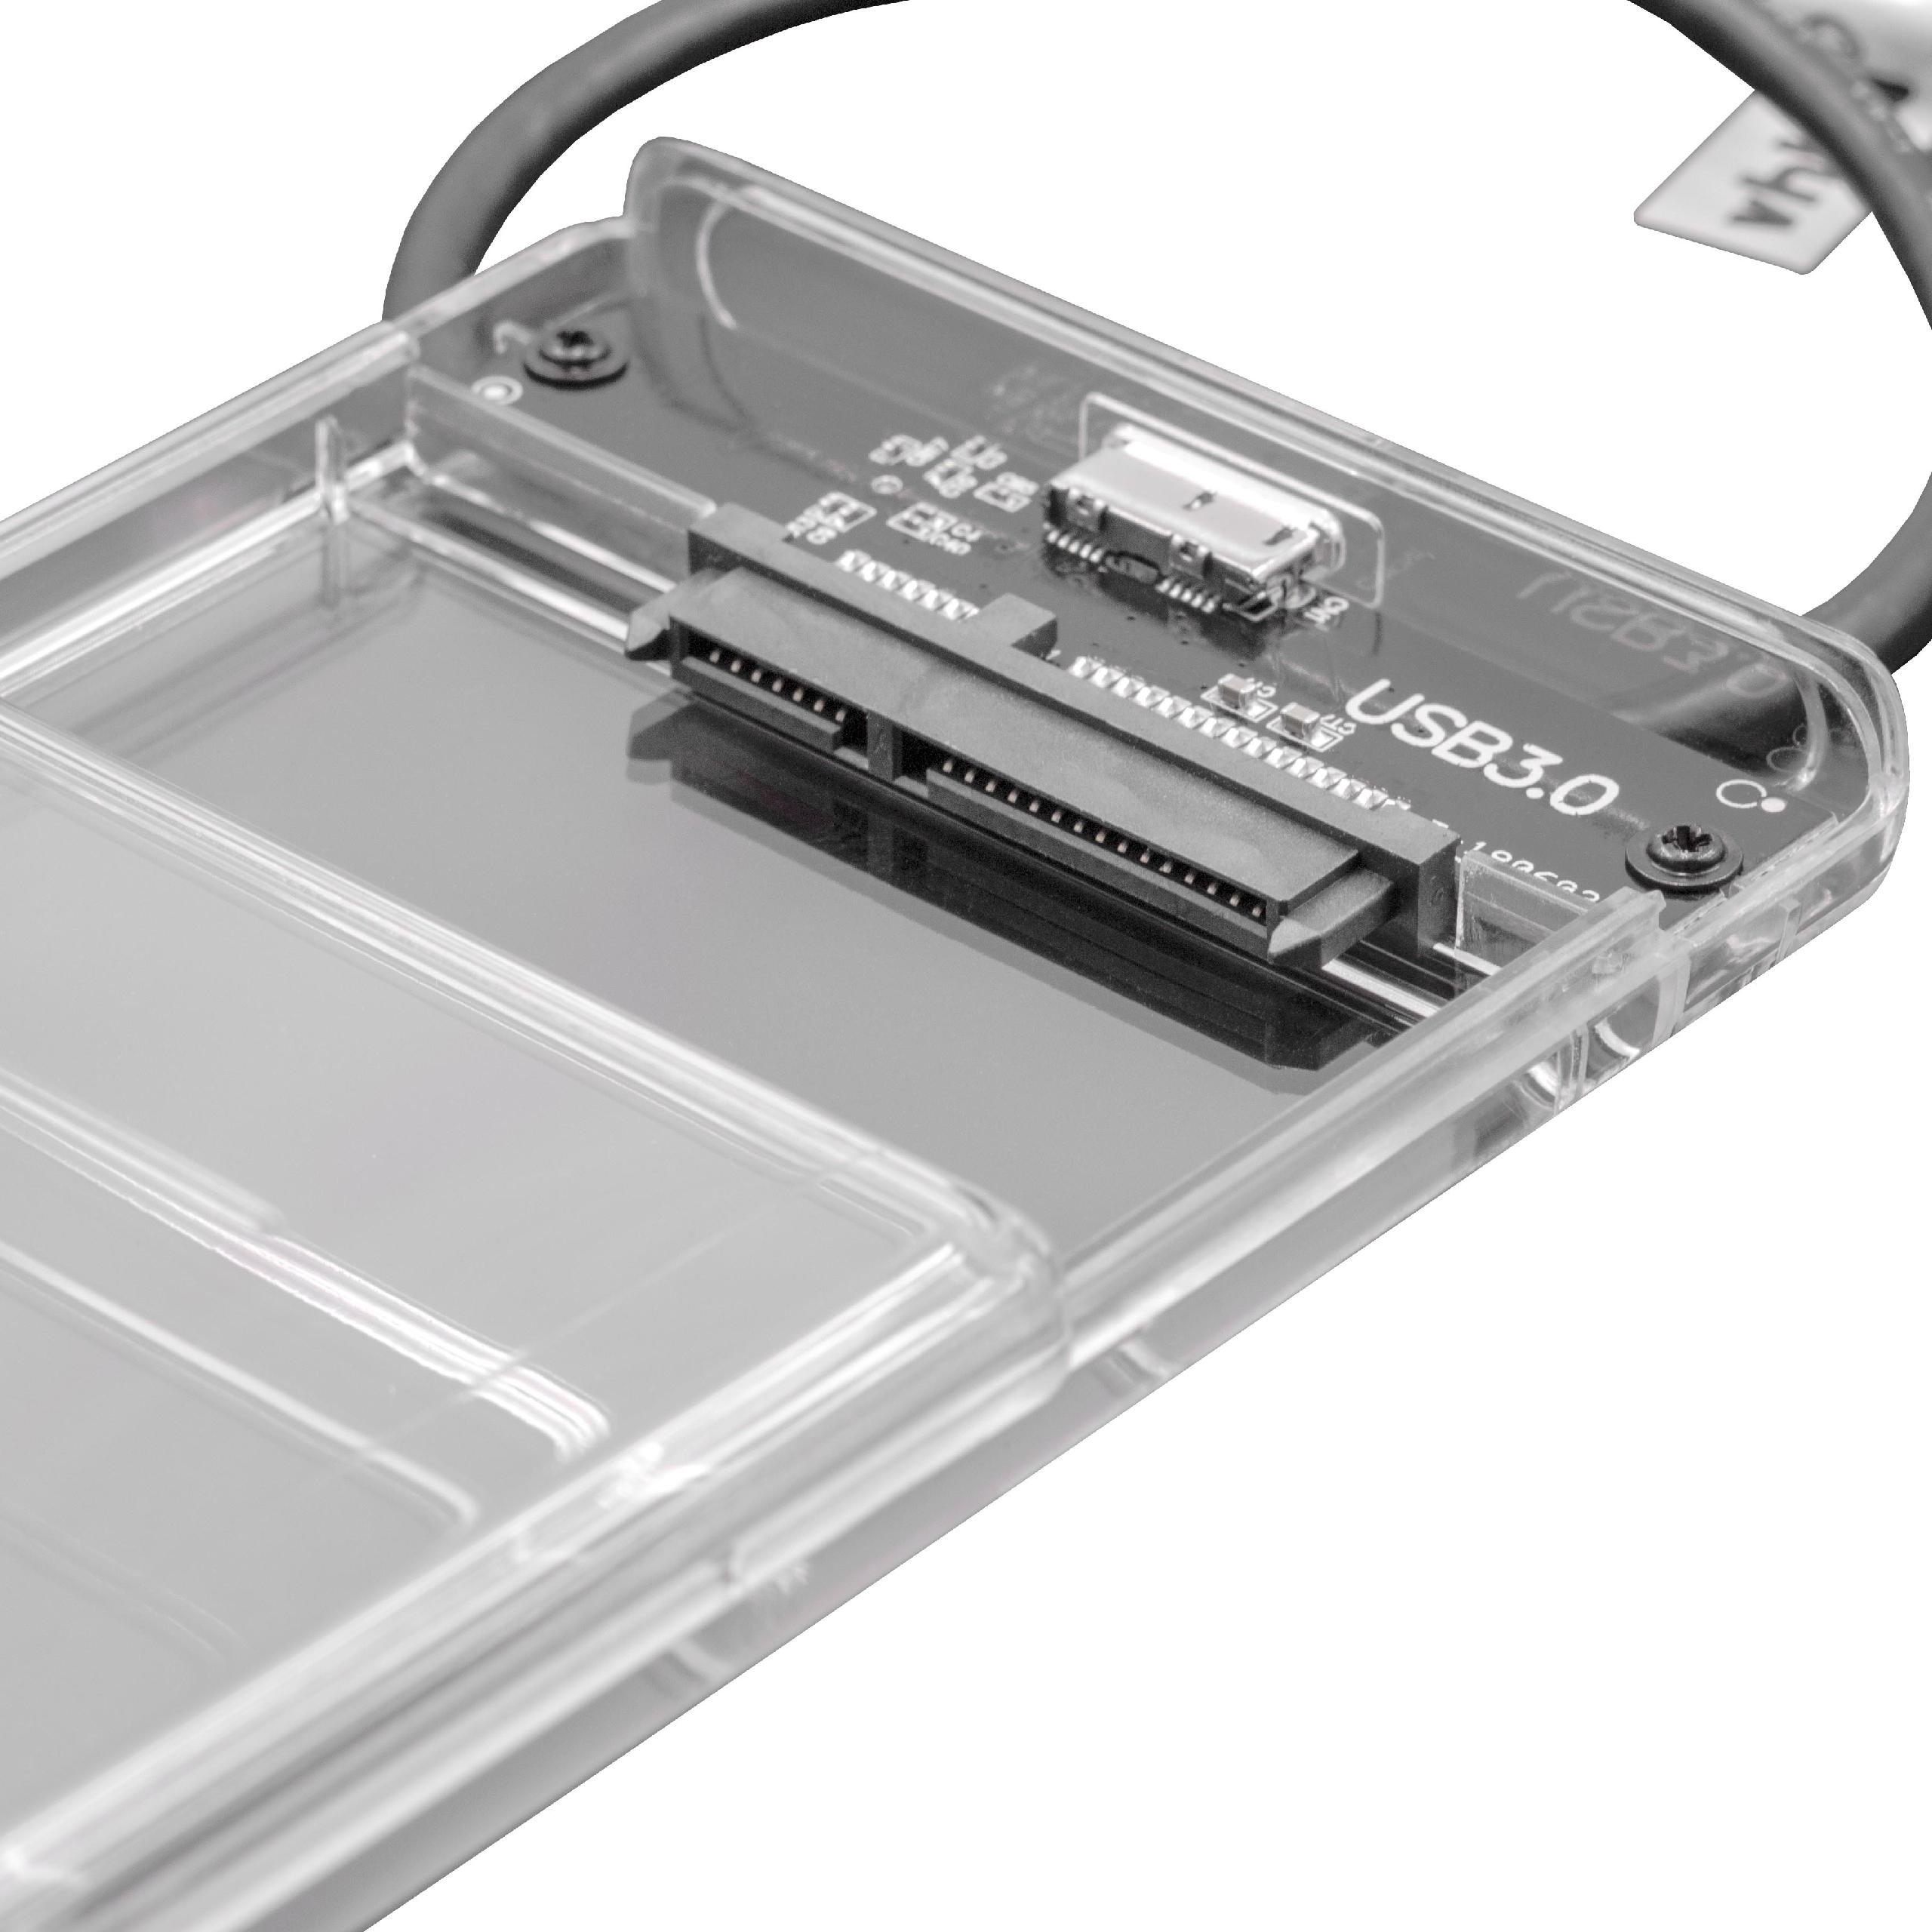 SATA III zu USB 3.0 Adapter Festplattenkabel Anschlusskabel für HDD, SSD Festplatten, Plug & Play fähig mit Ge